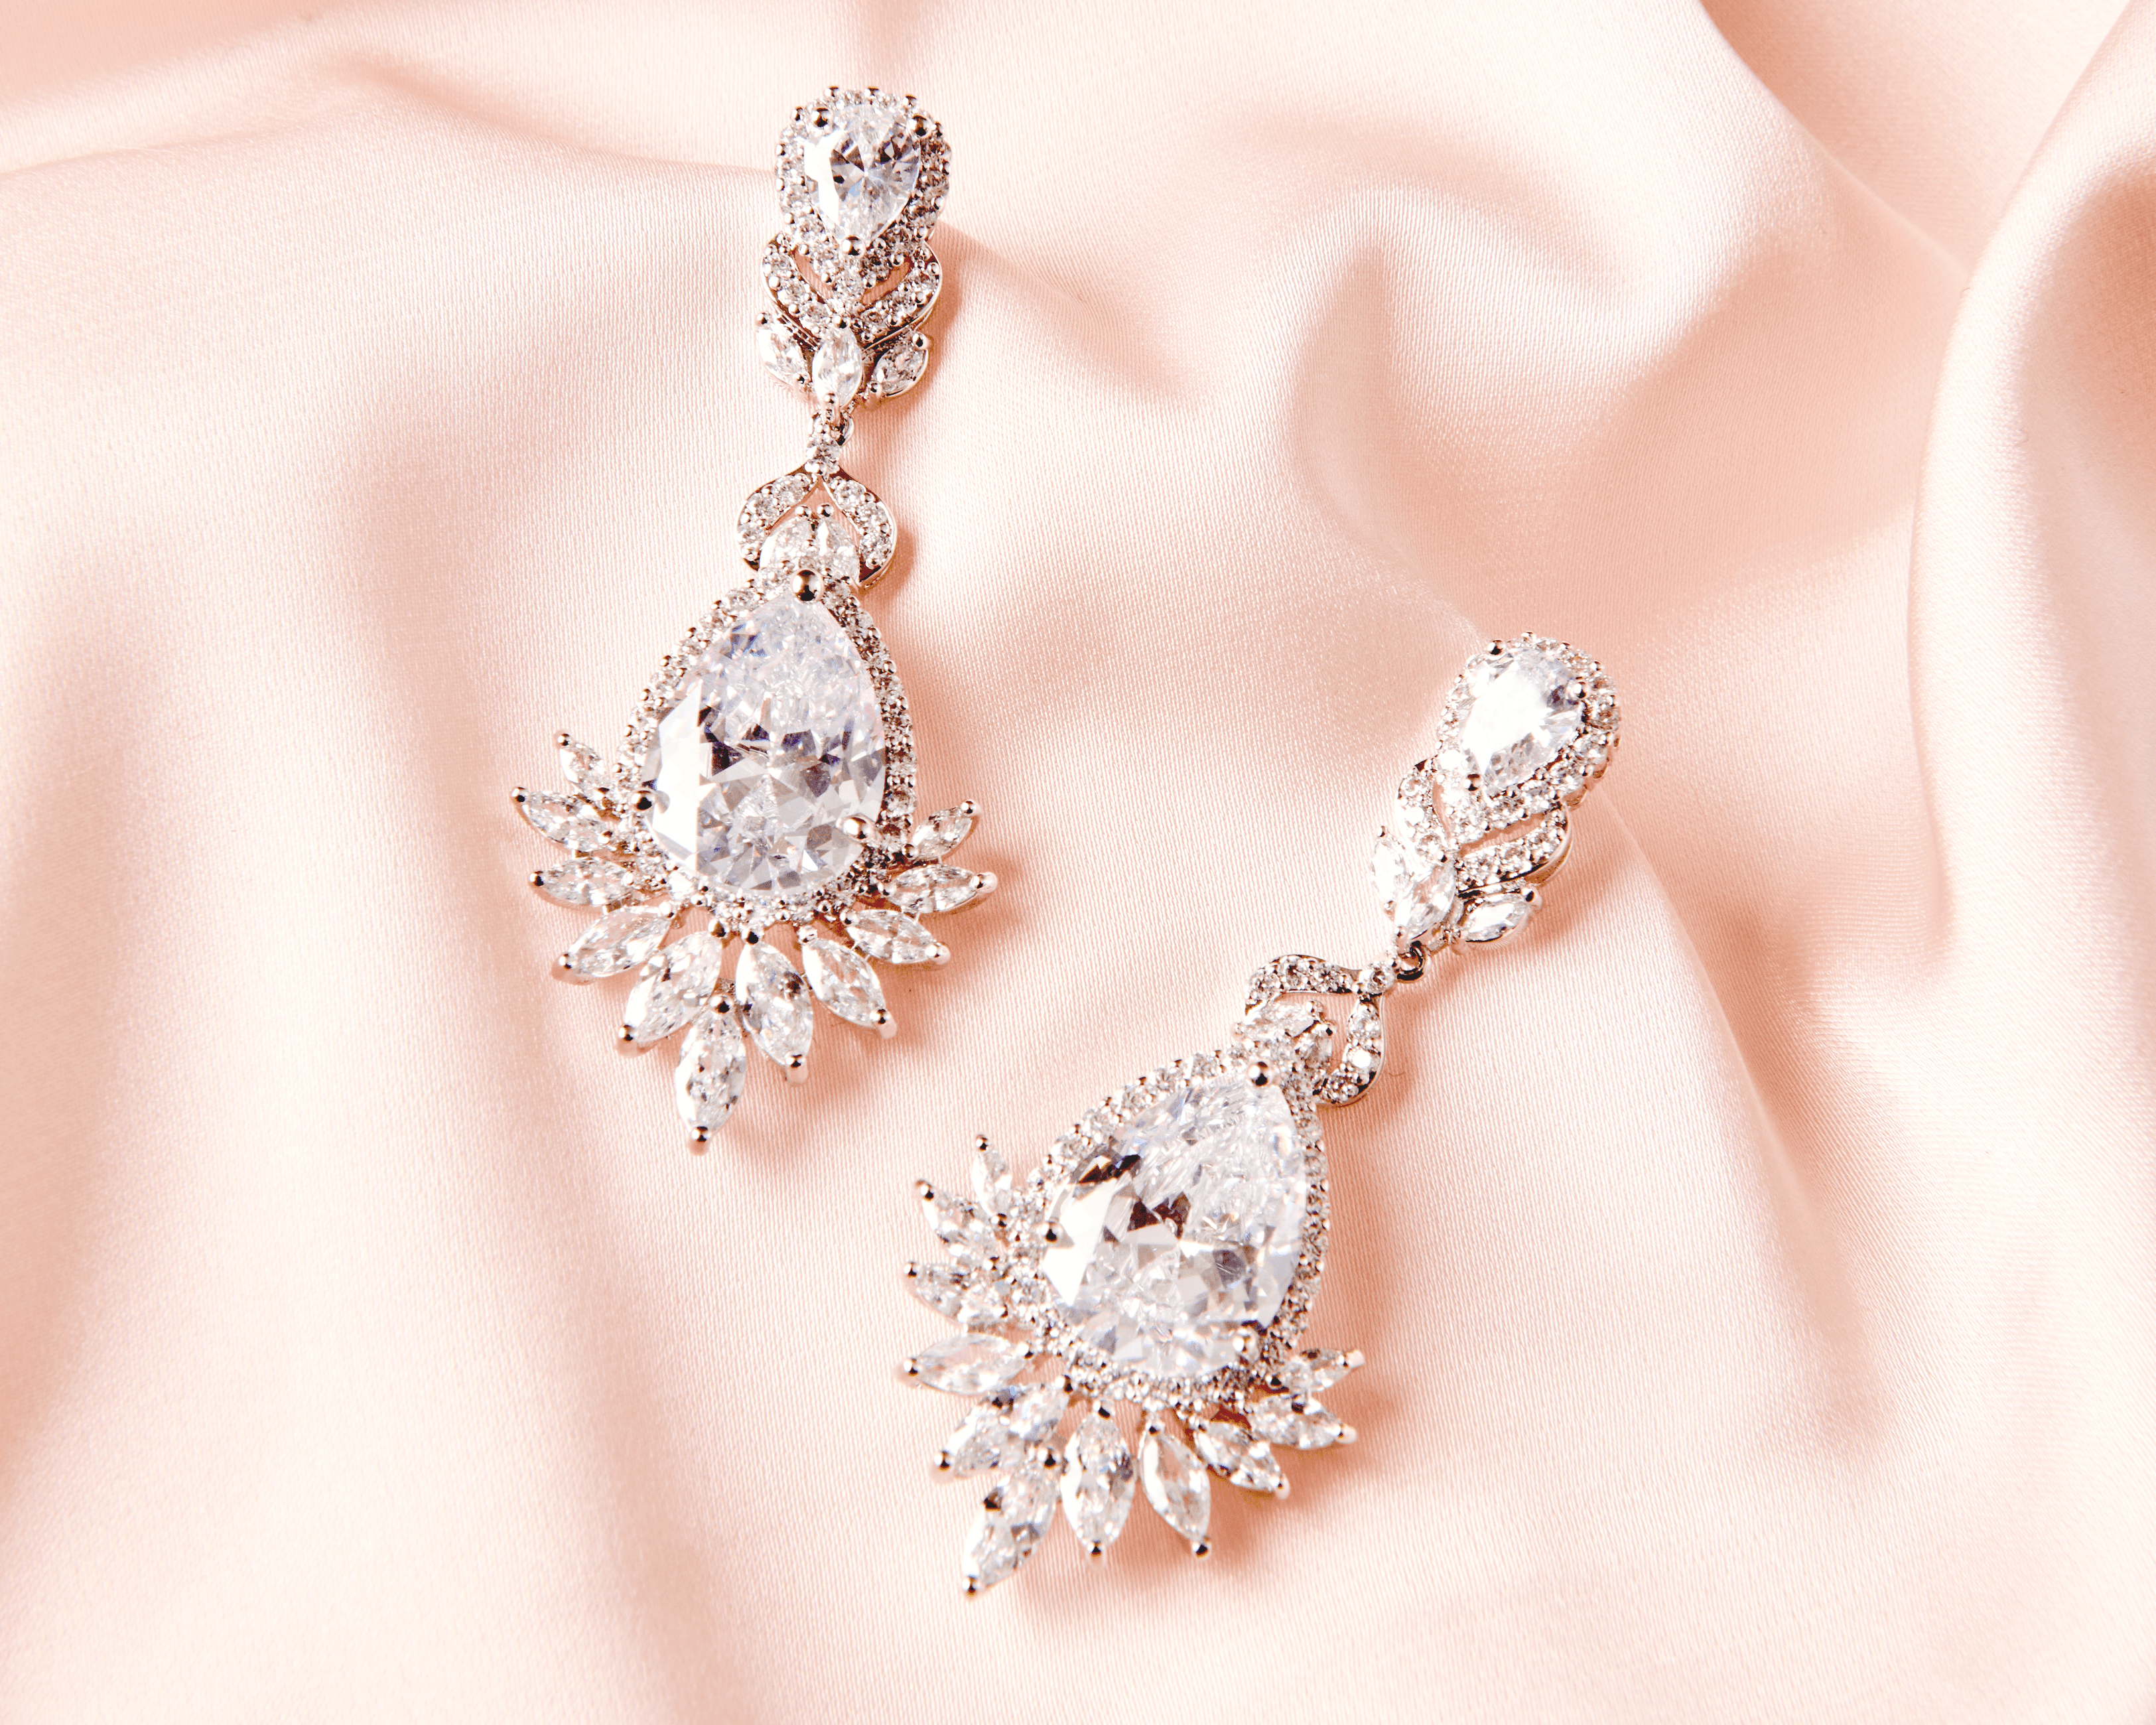 Crystal Chandelier Earrings - Silver Bridal Chandelier Earrings - Hundred Hearts